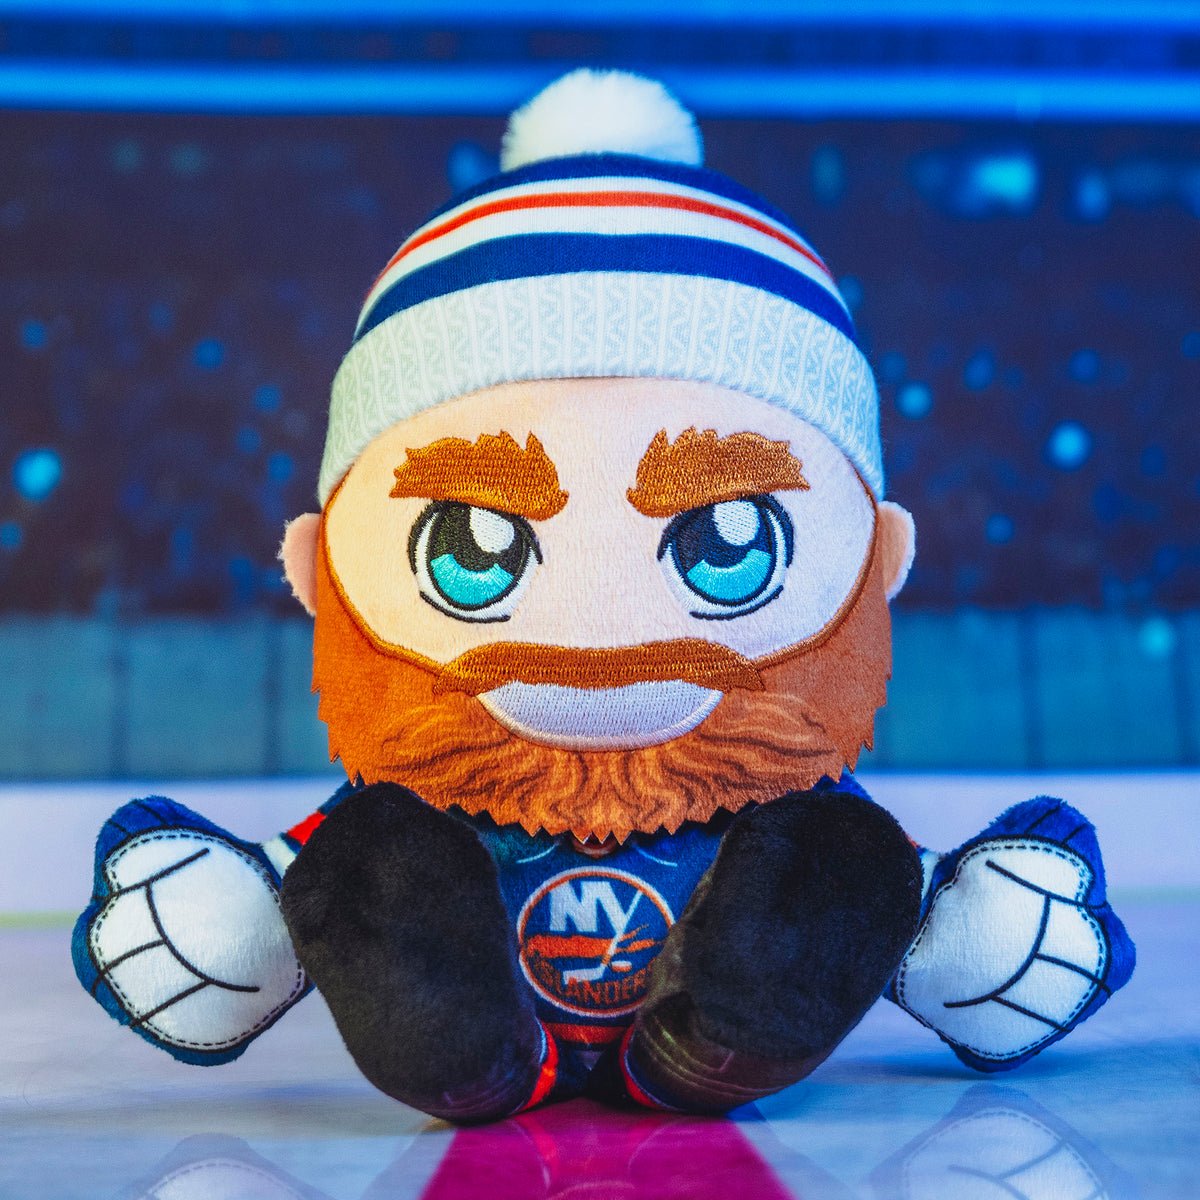 New York Islanders Nyisles 8&quot; Kuricha Mascot Plush